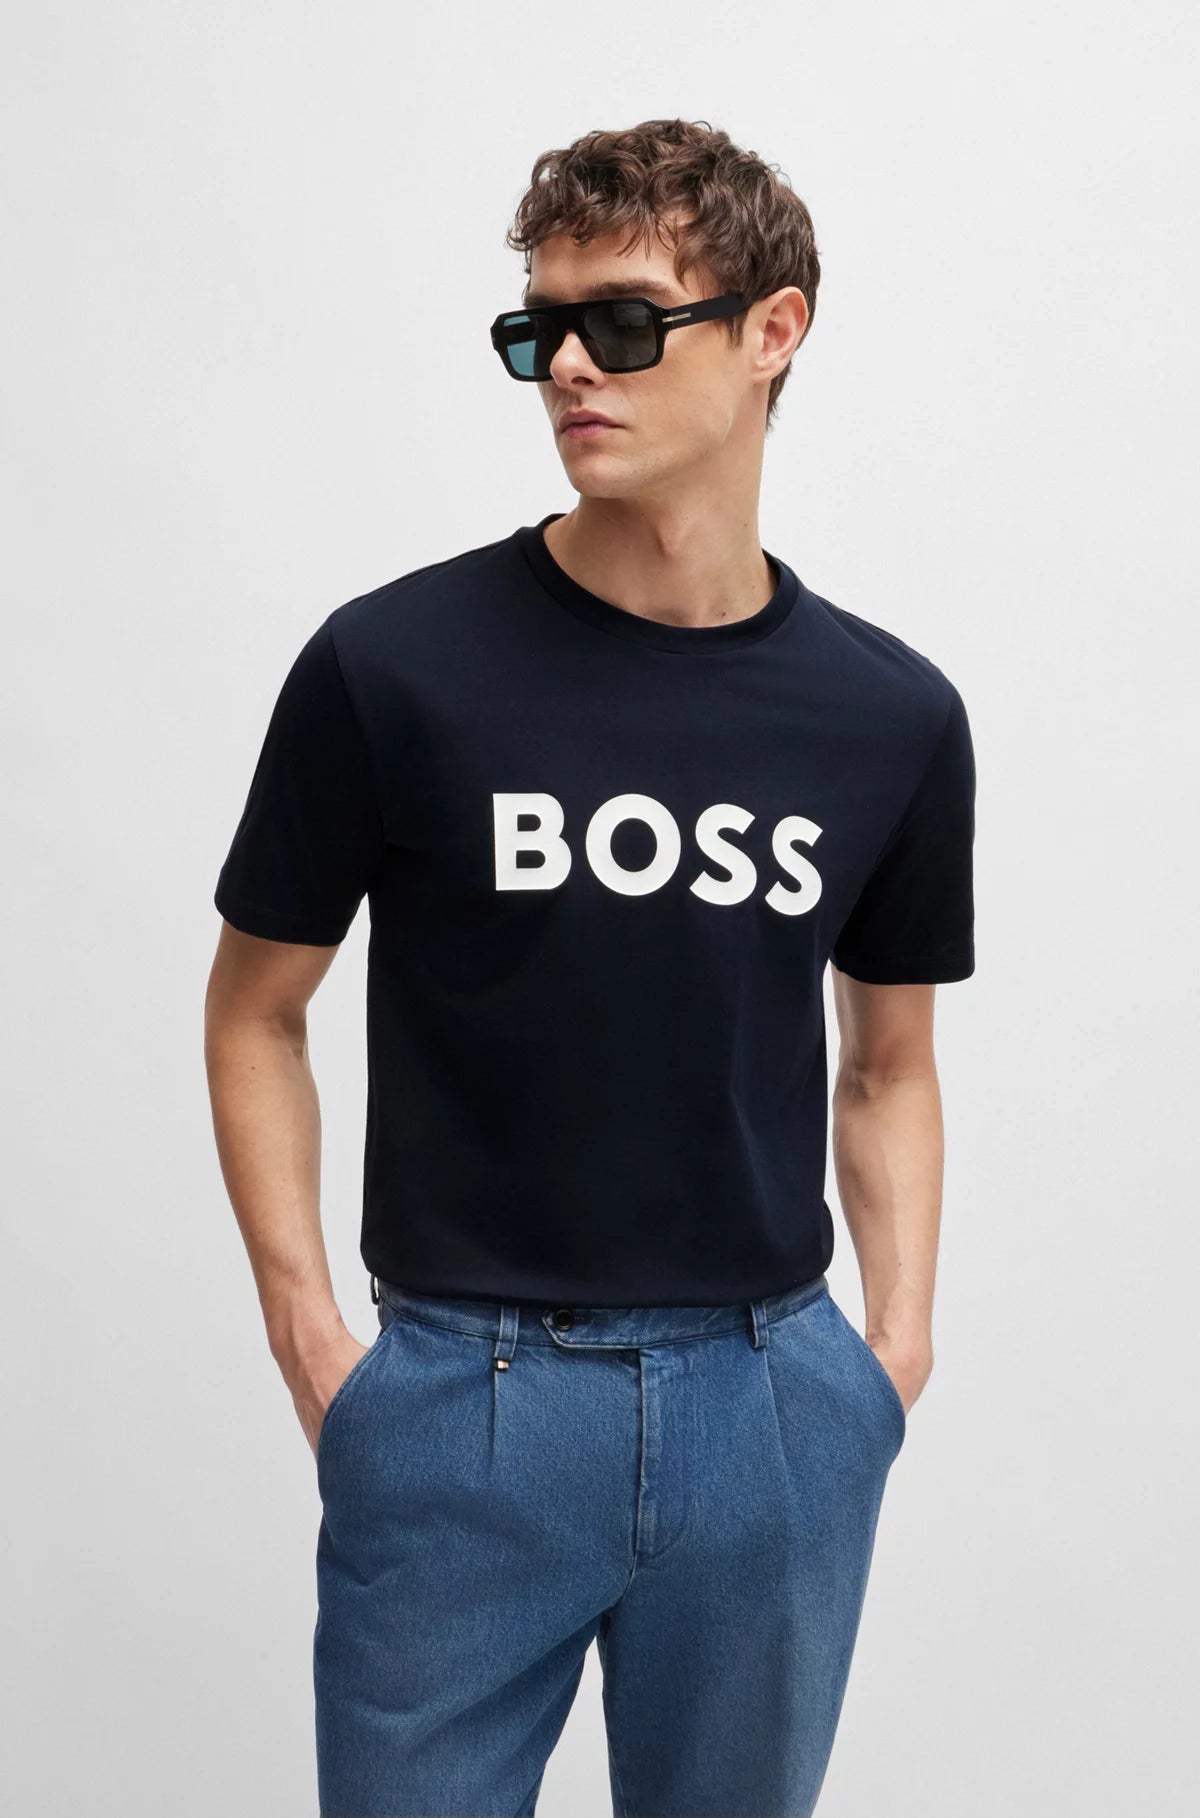 BOSS T-Shirt  - Tiburt 354